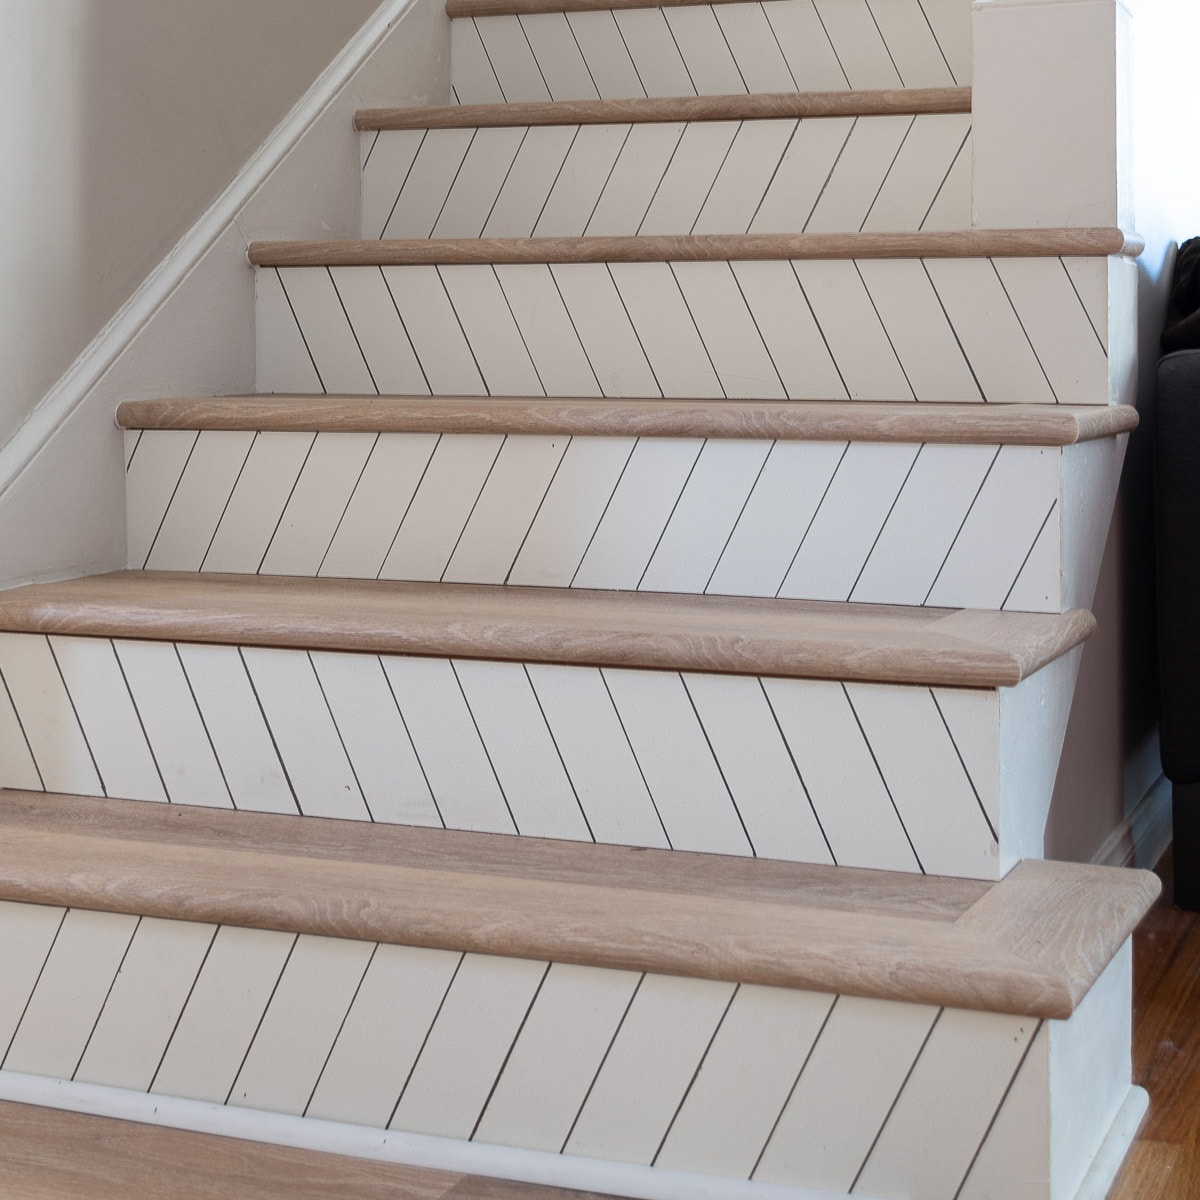 Easy DIY Stair Remodel (Step-by-Step Tutorial)